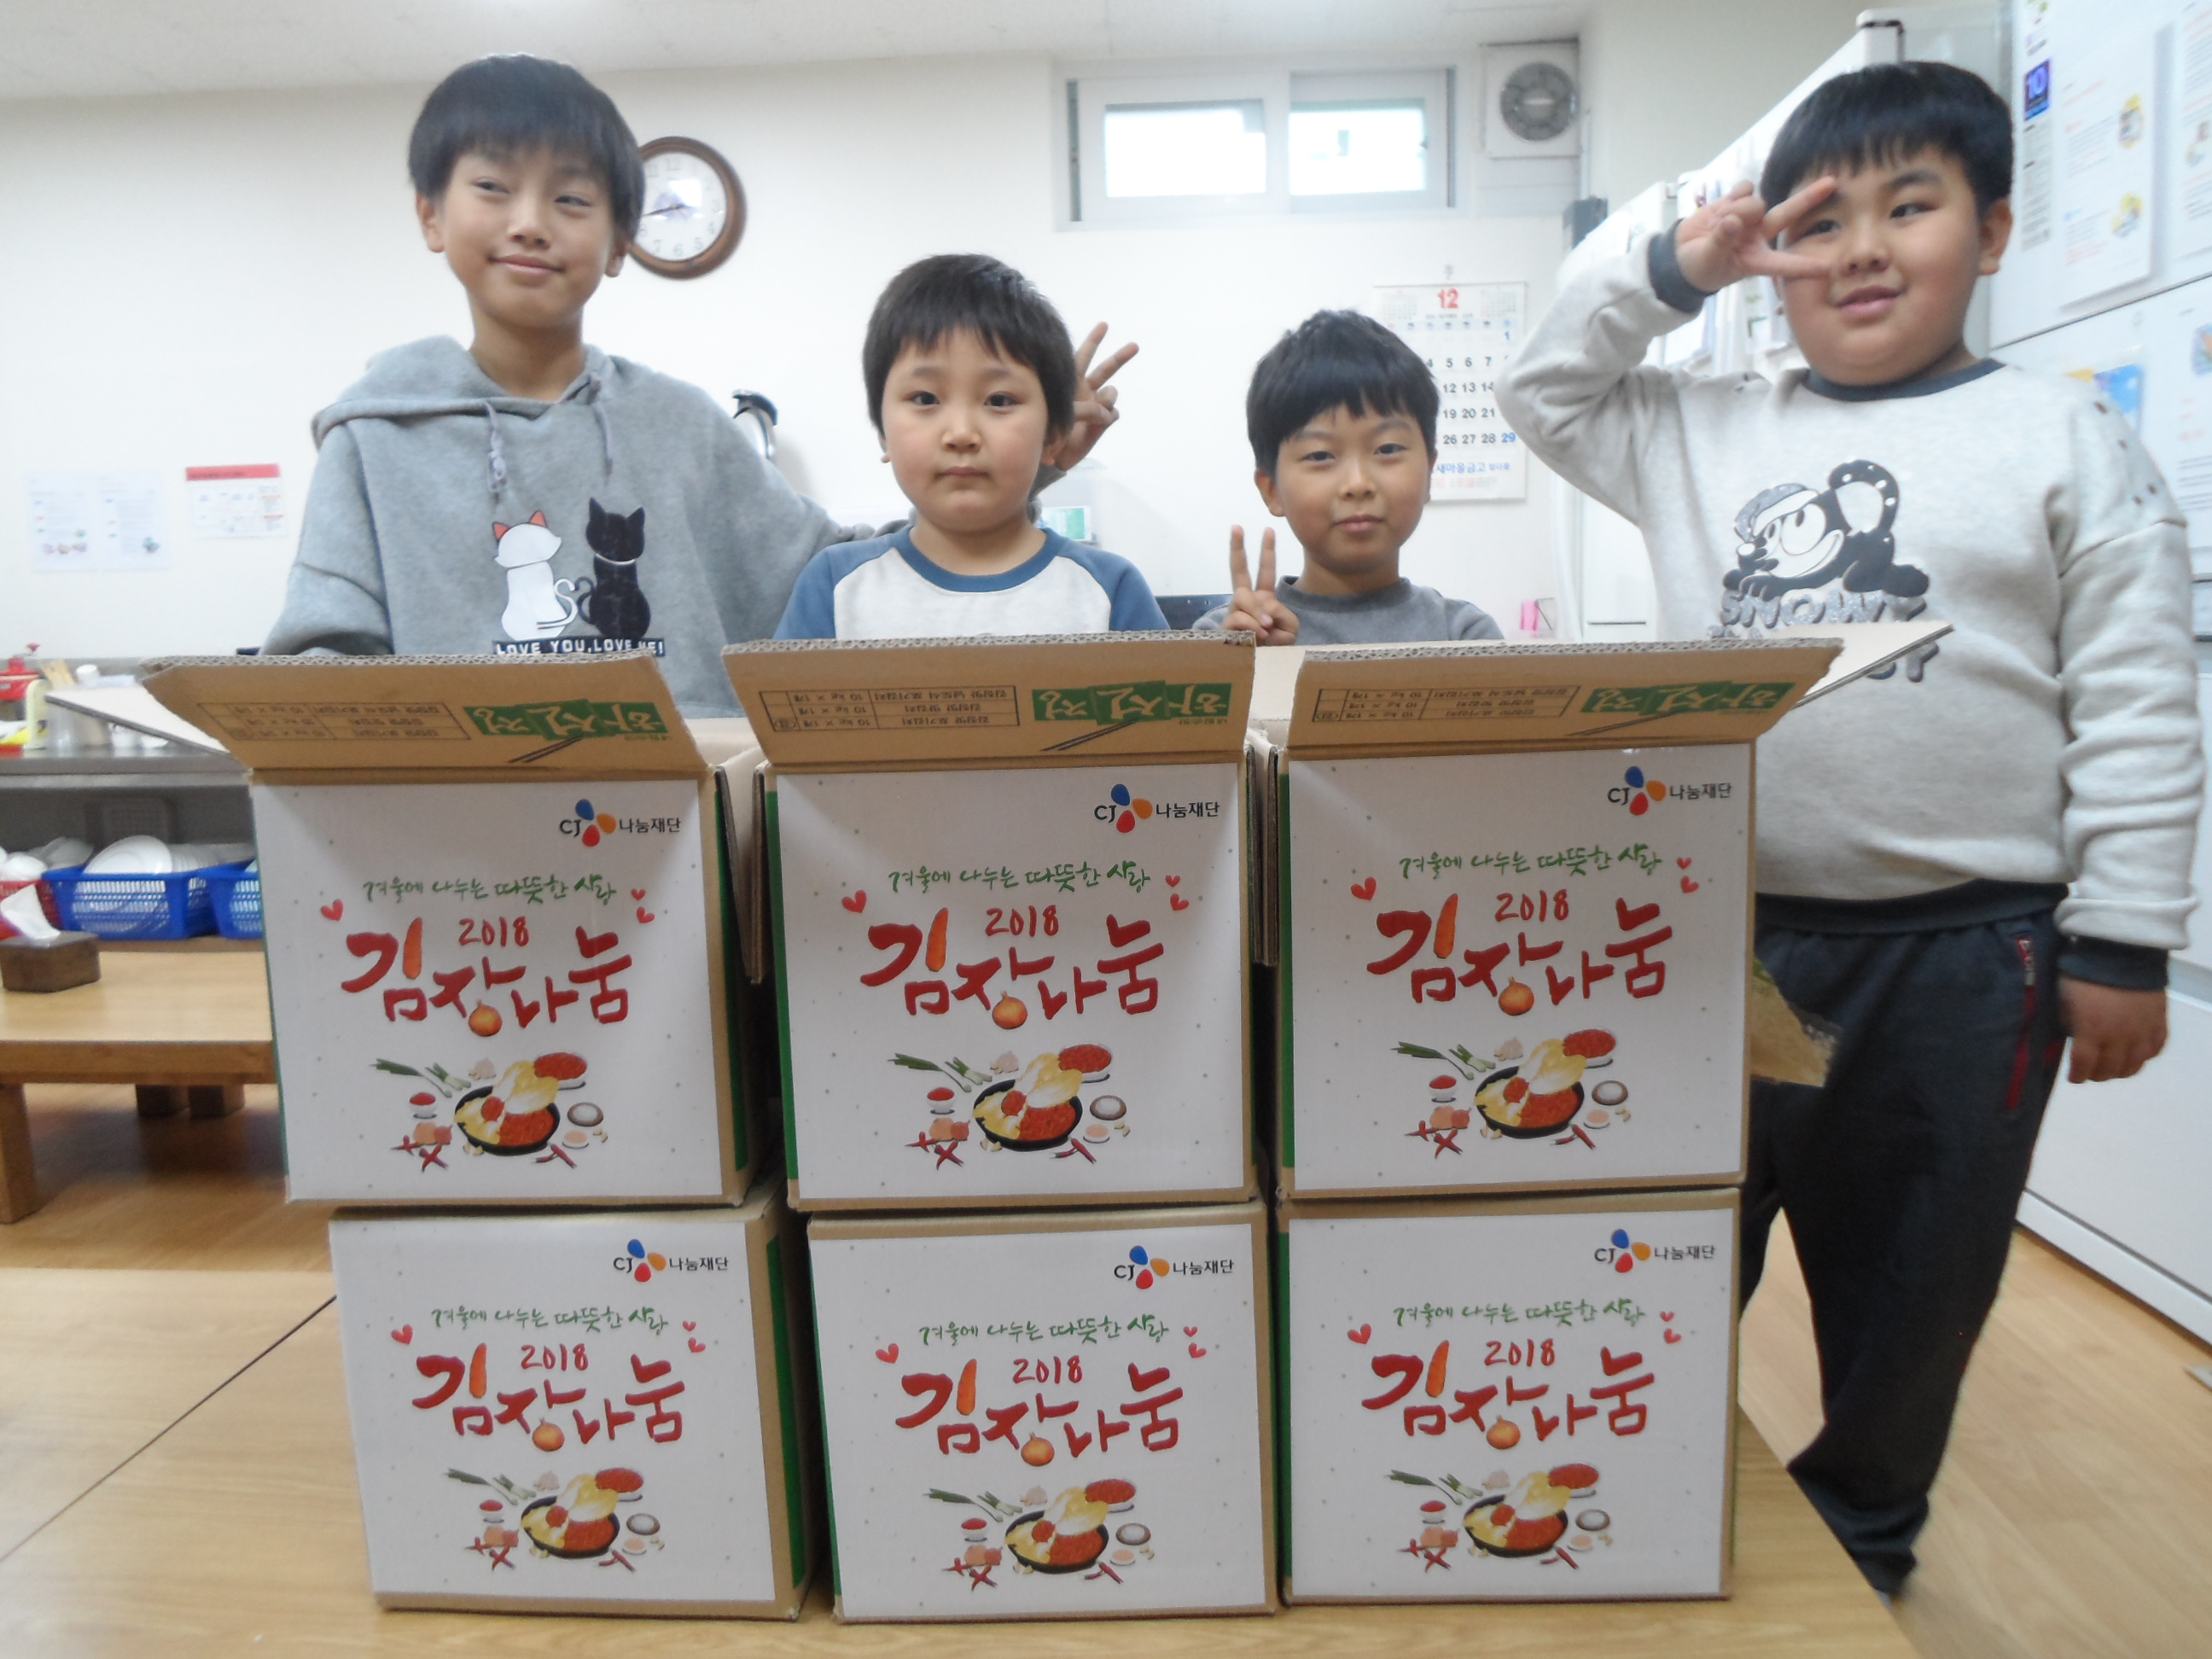 김치 앞에서 활짝 웃고 있는 아동들의 사진입니다.